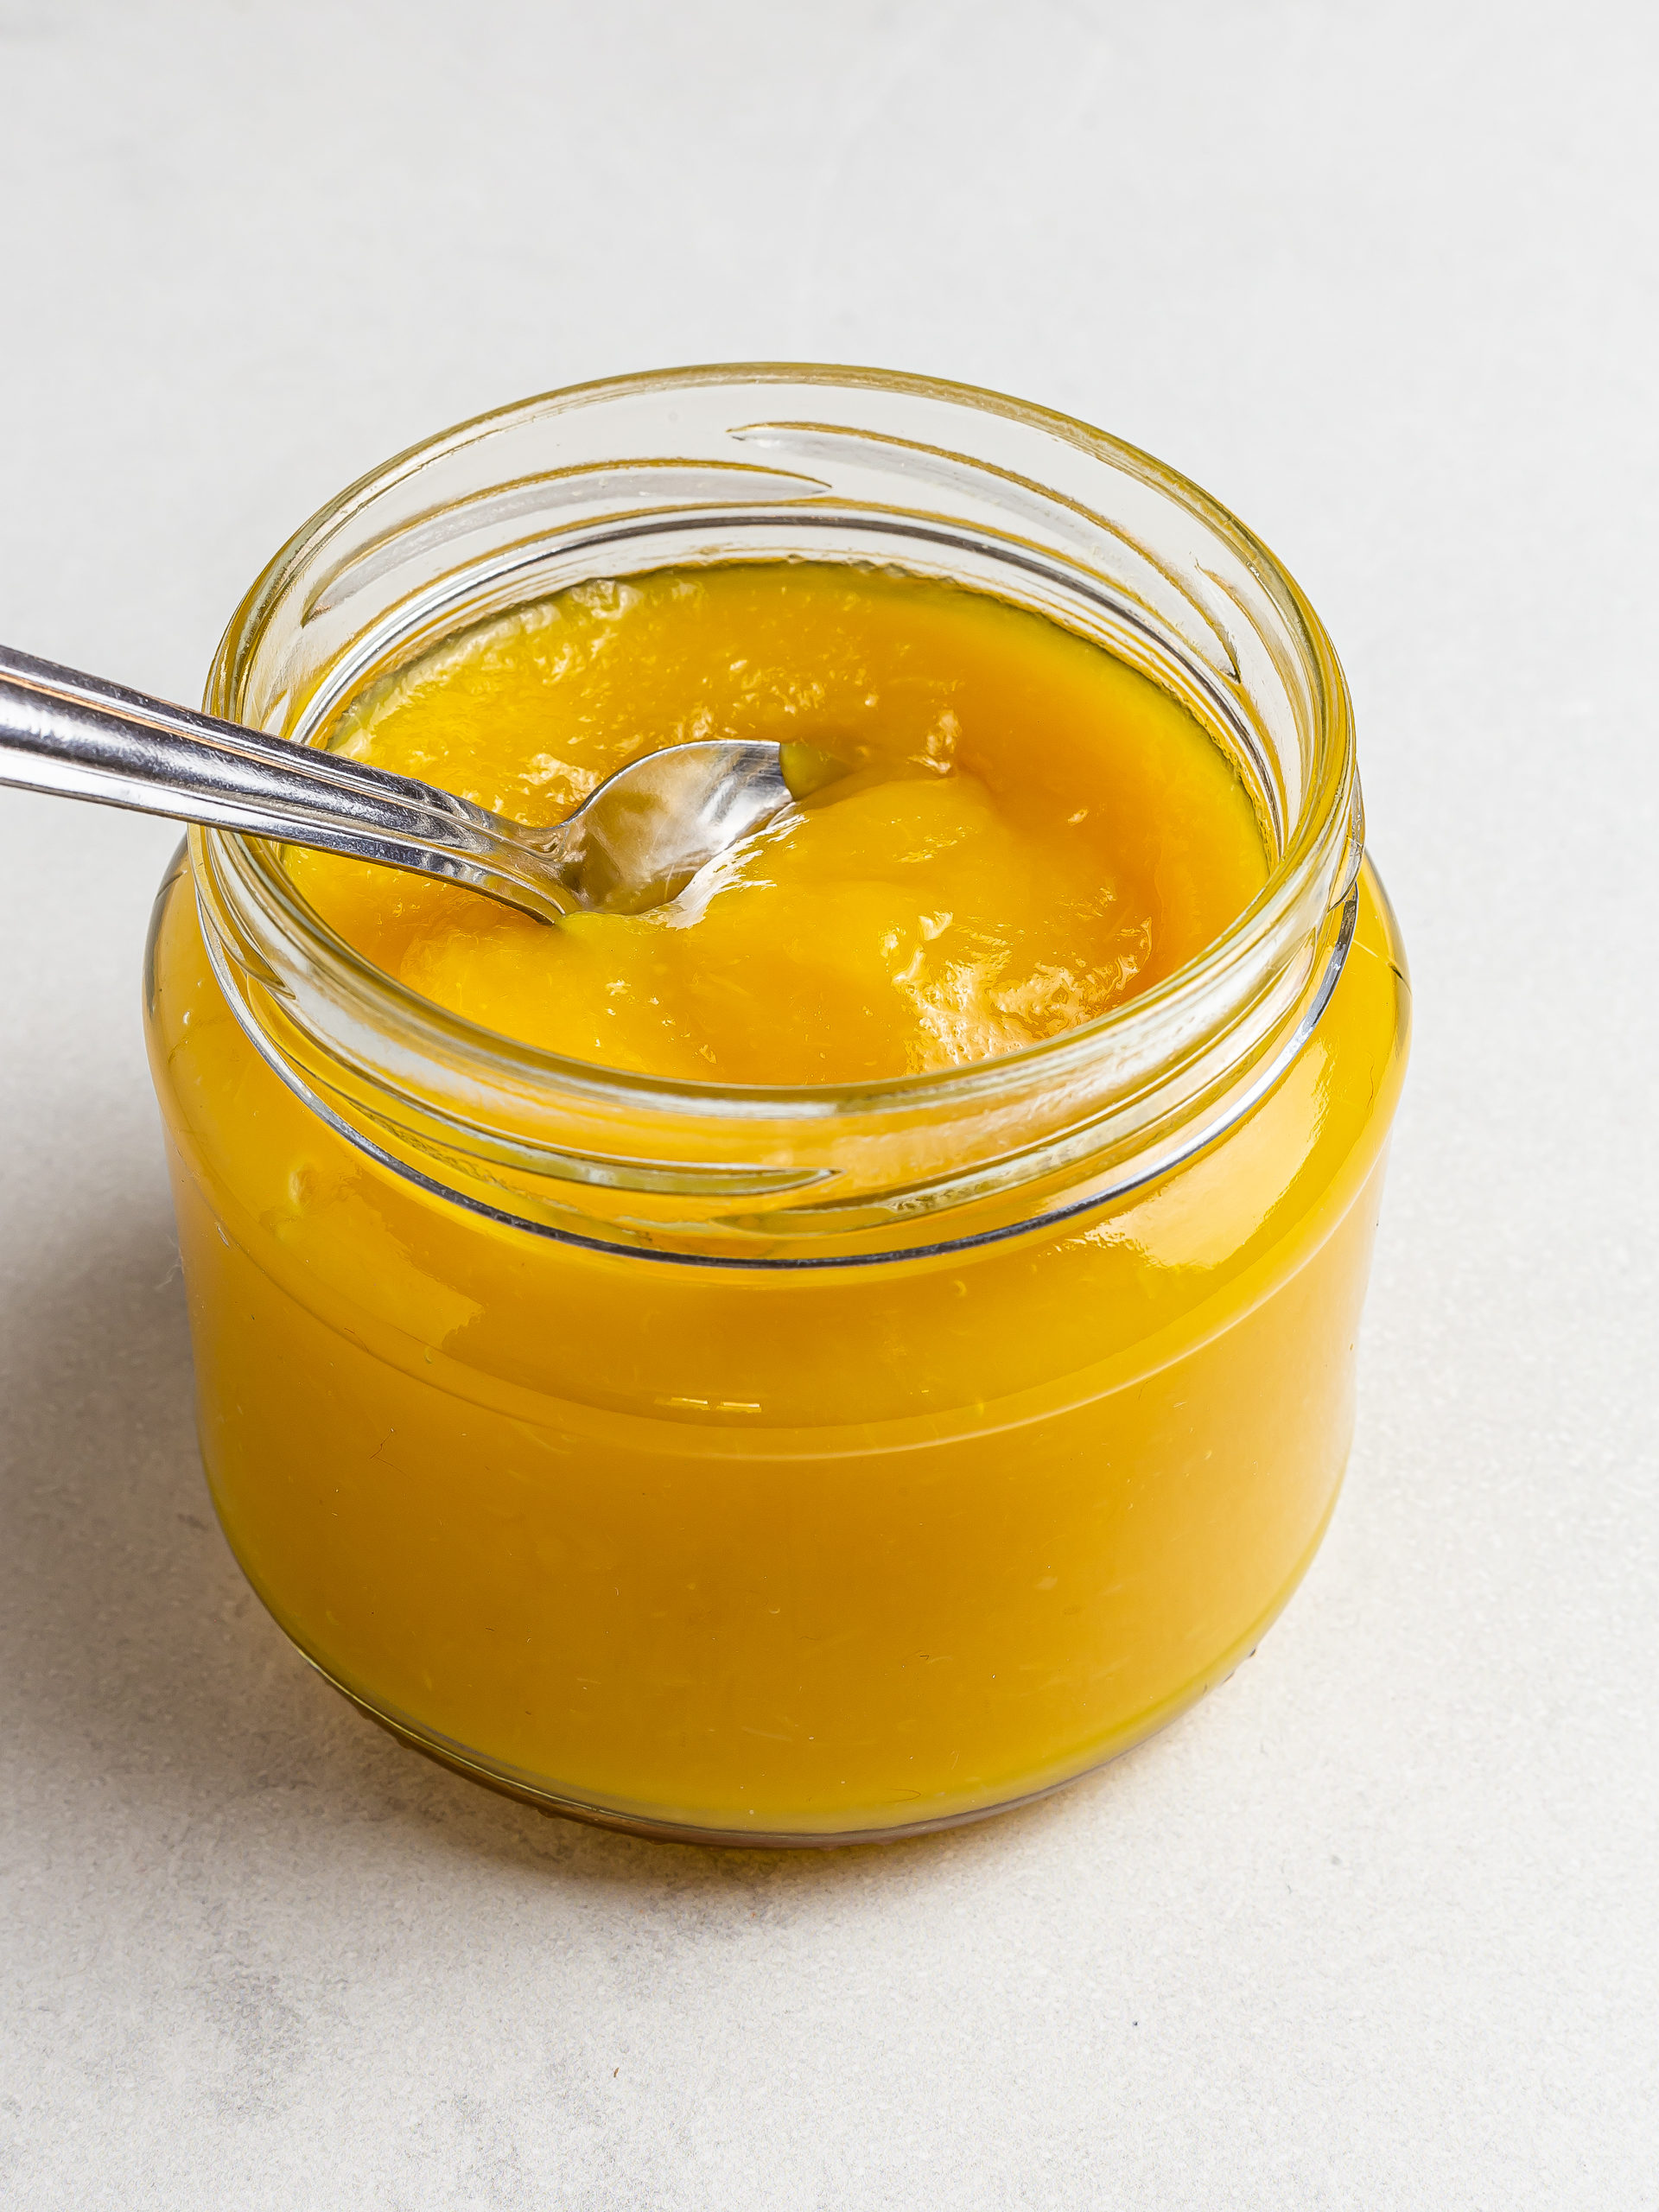 sugar-free mango jam in a jar